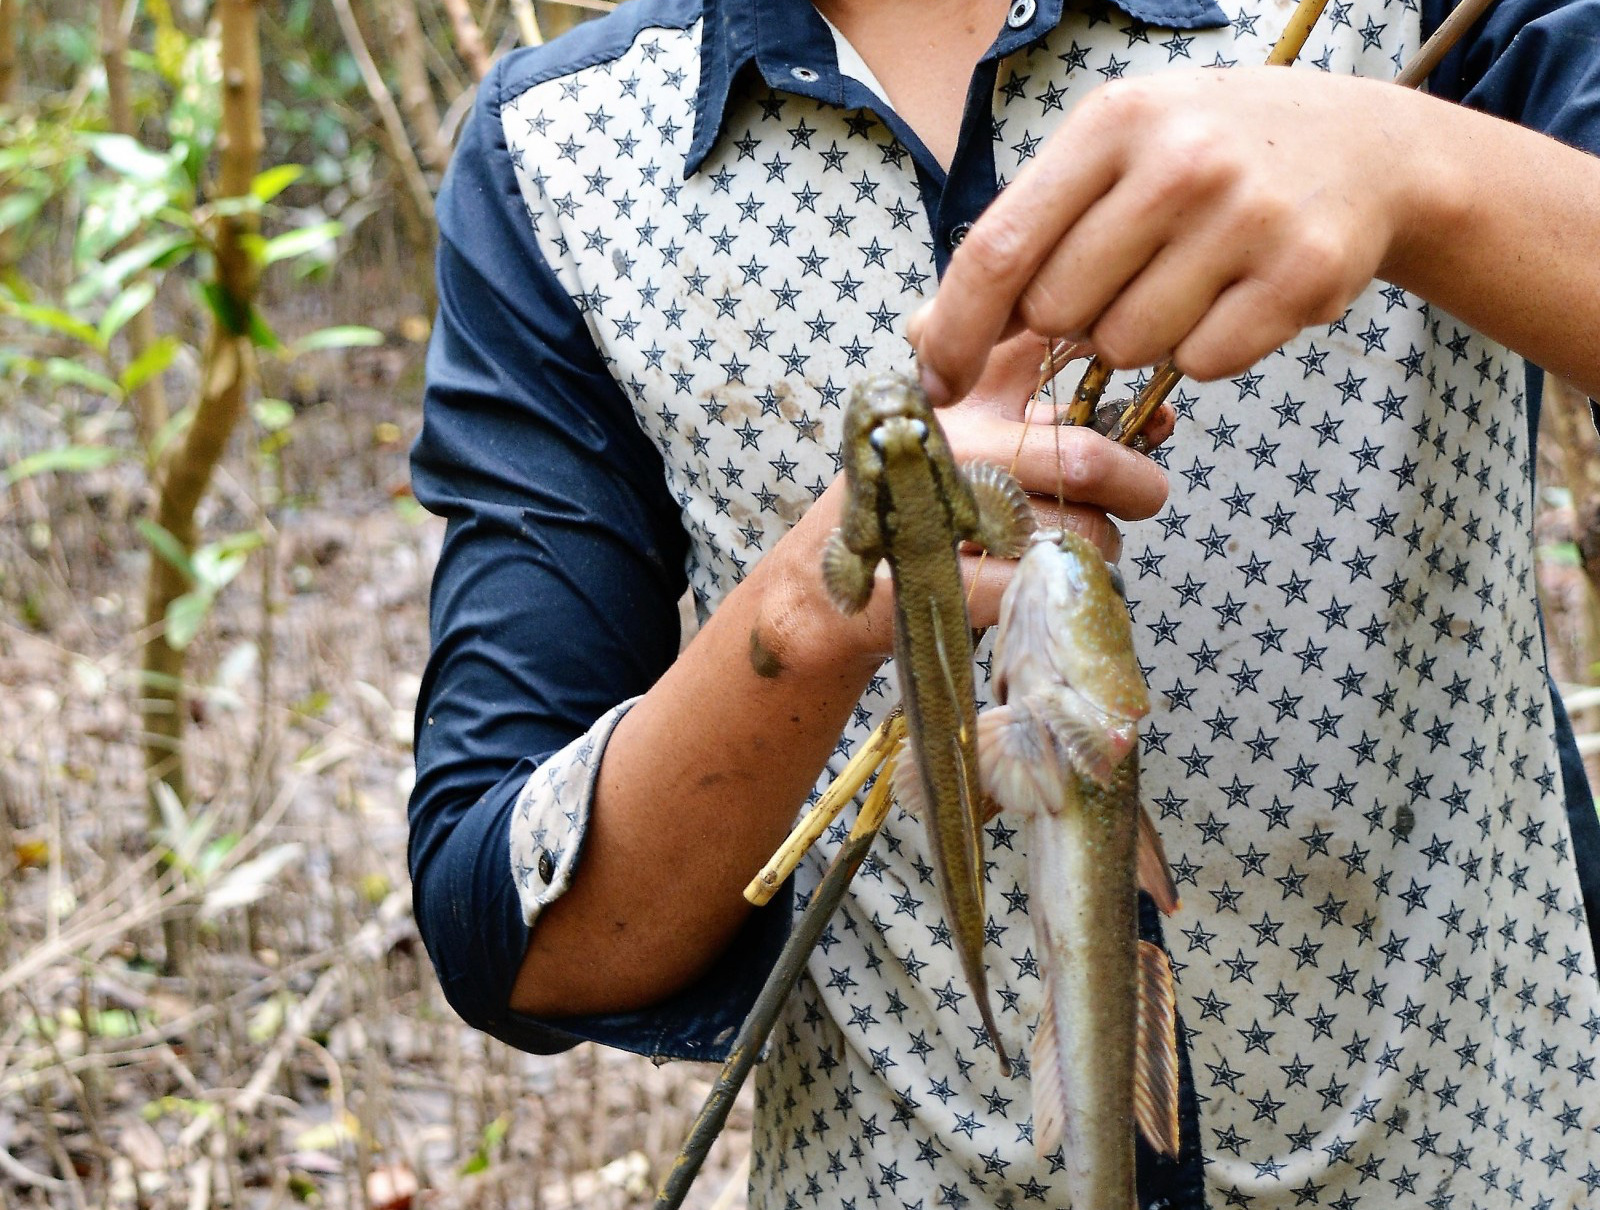 Việt Nam có một loài cá biết leo cây, chạy nhảy và còn là đặc sản nổi tiếng cả một vùng - Ảnh 4.